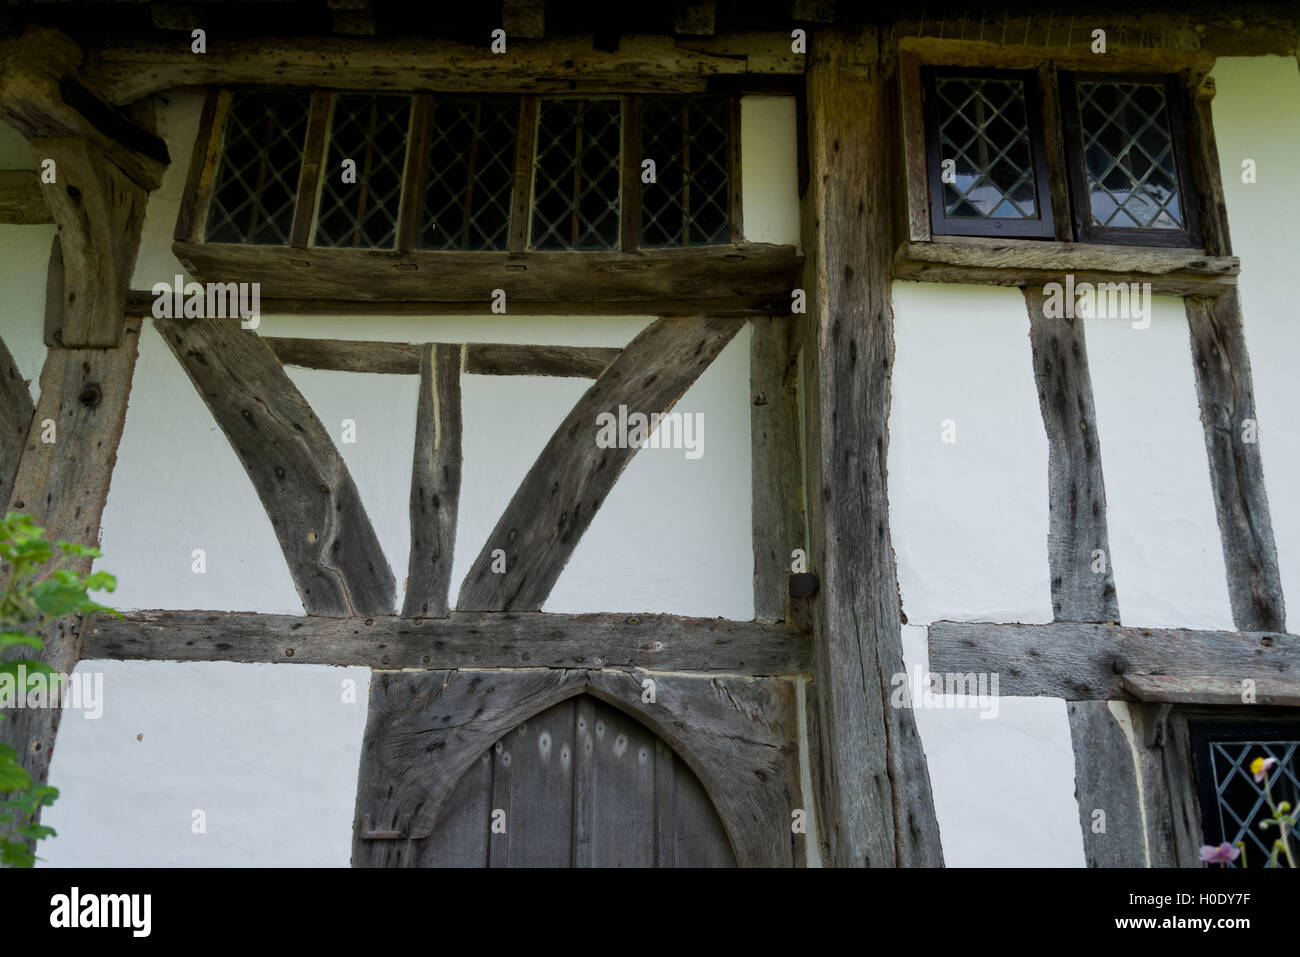 Fachwerk Gebäude in England, Vereinigtes Königreich. Eiche Holz-Struktur mit Flechtwerk und Lehm-Füllung. Mit Kalk Kalk gemalt. Stockfoto